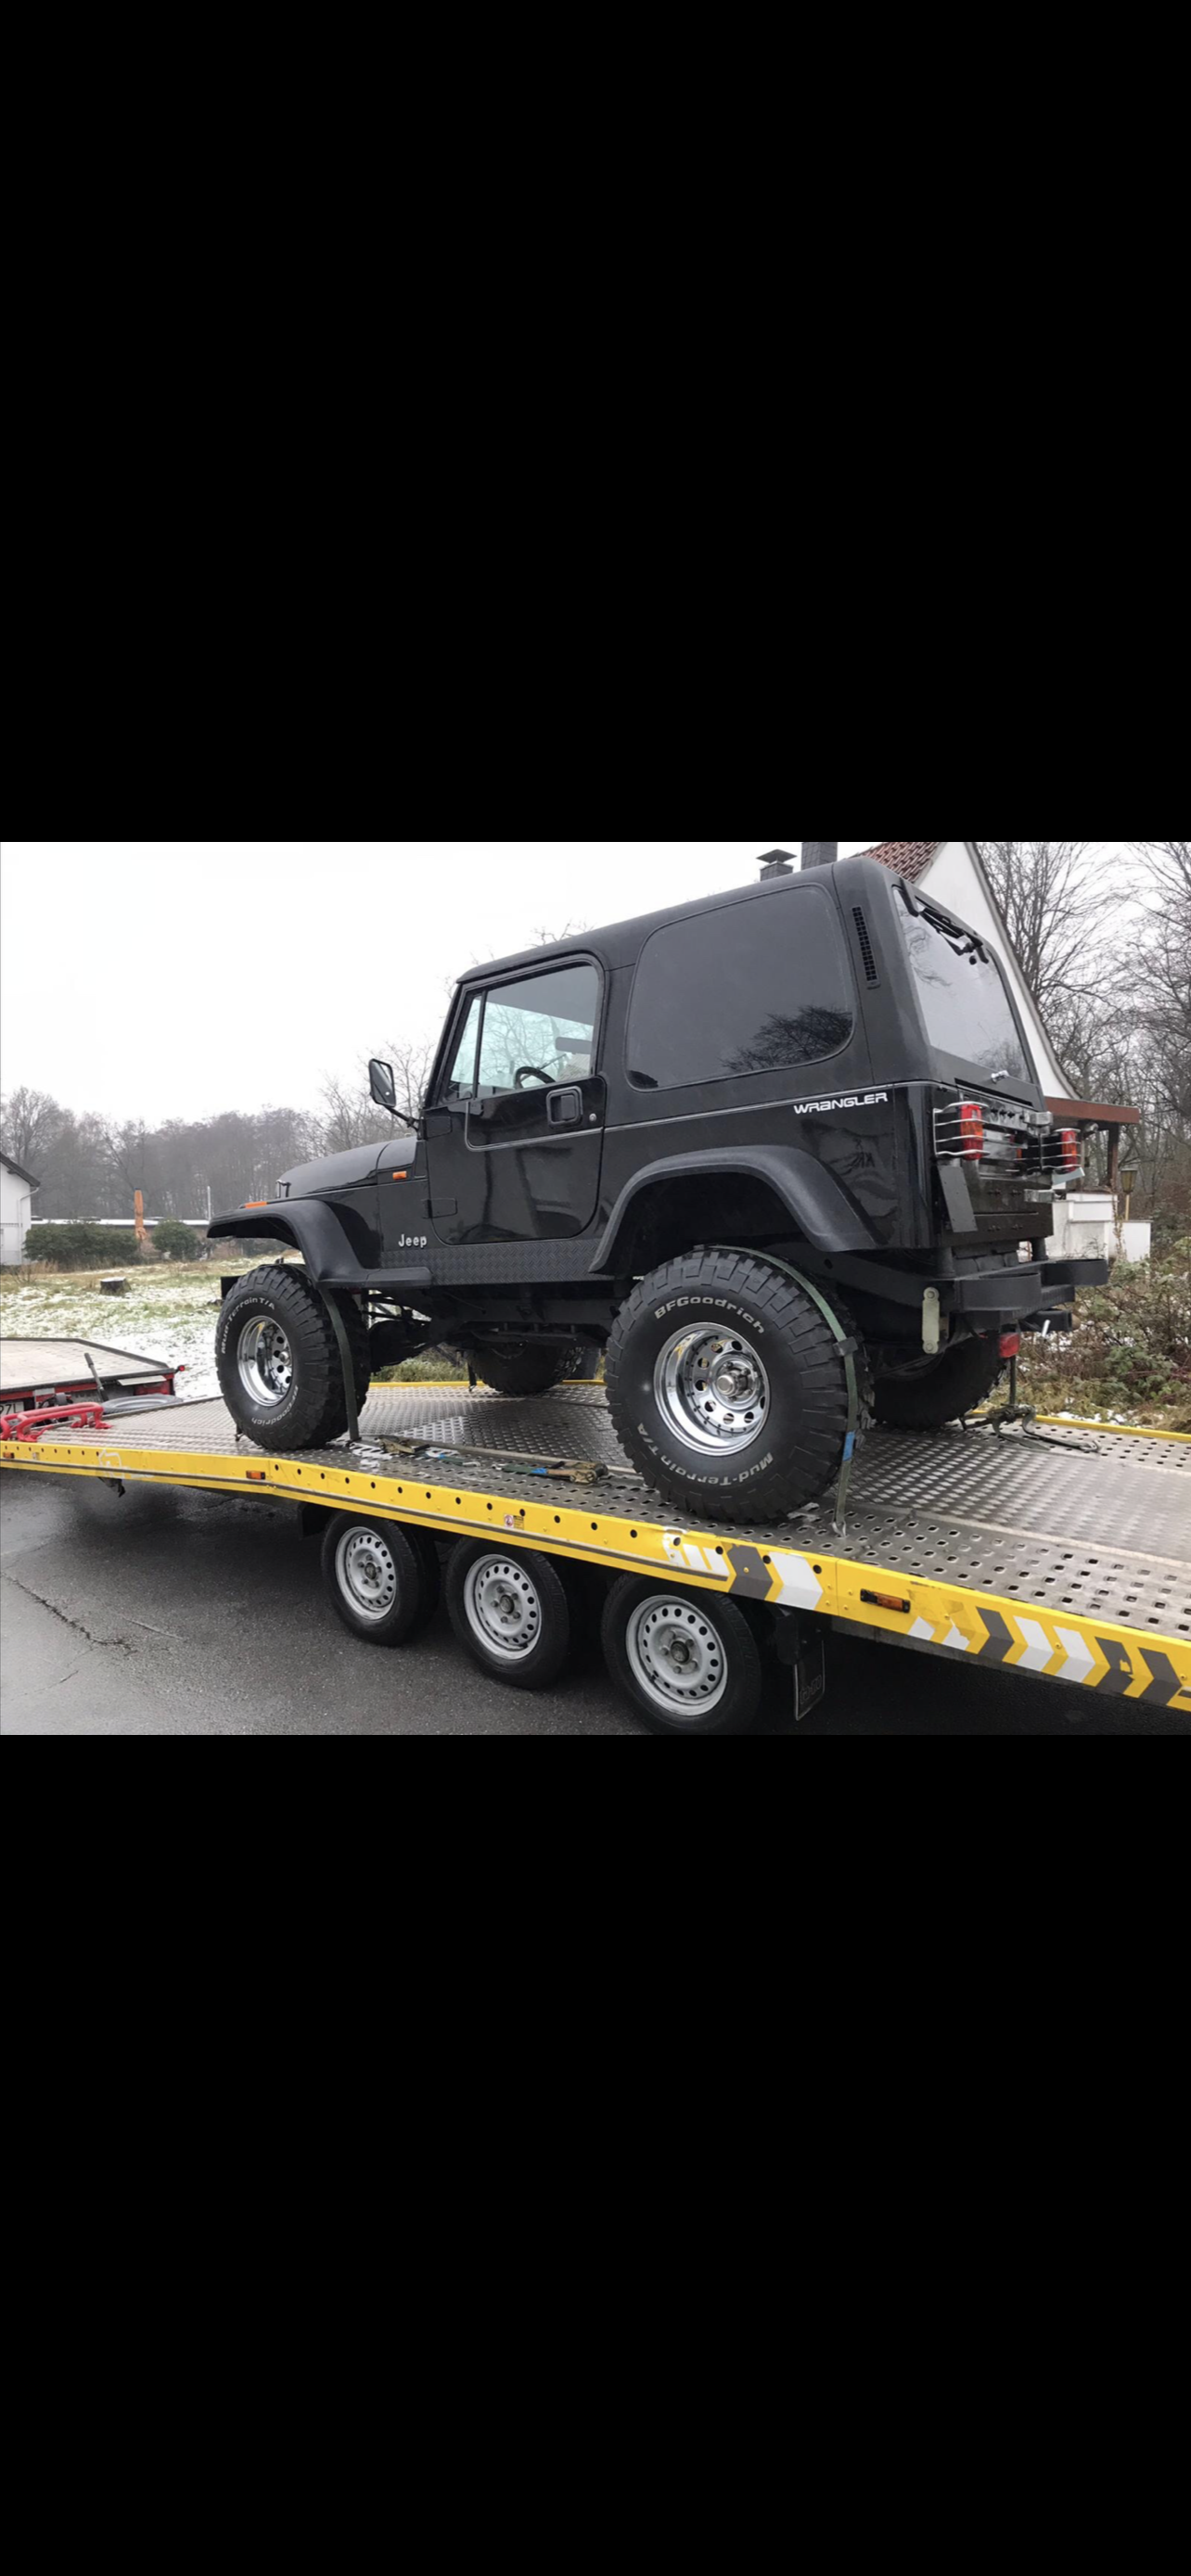 Jeep Wrangler von italien nach Deutschland